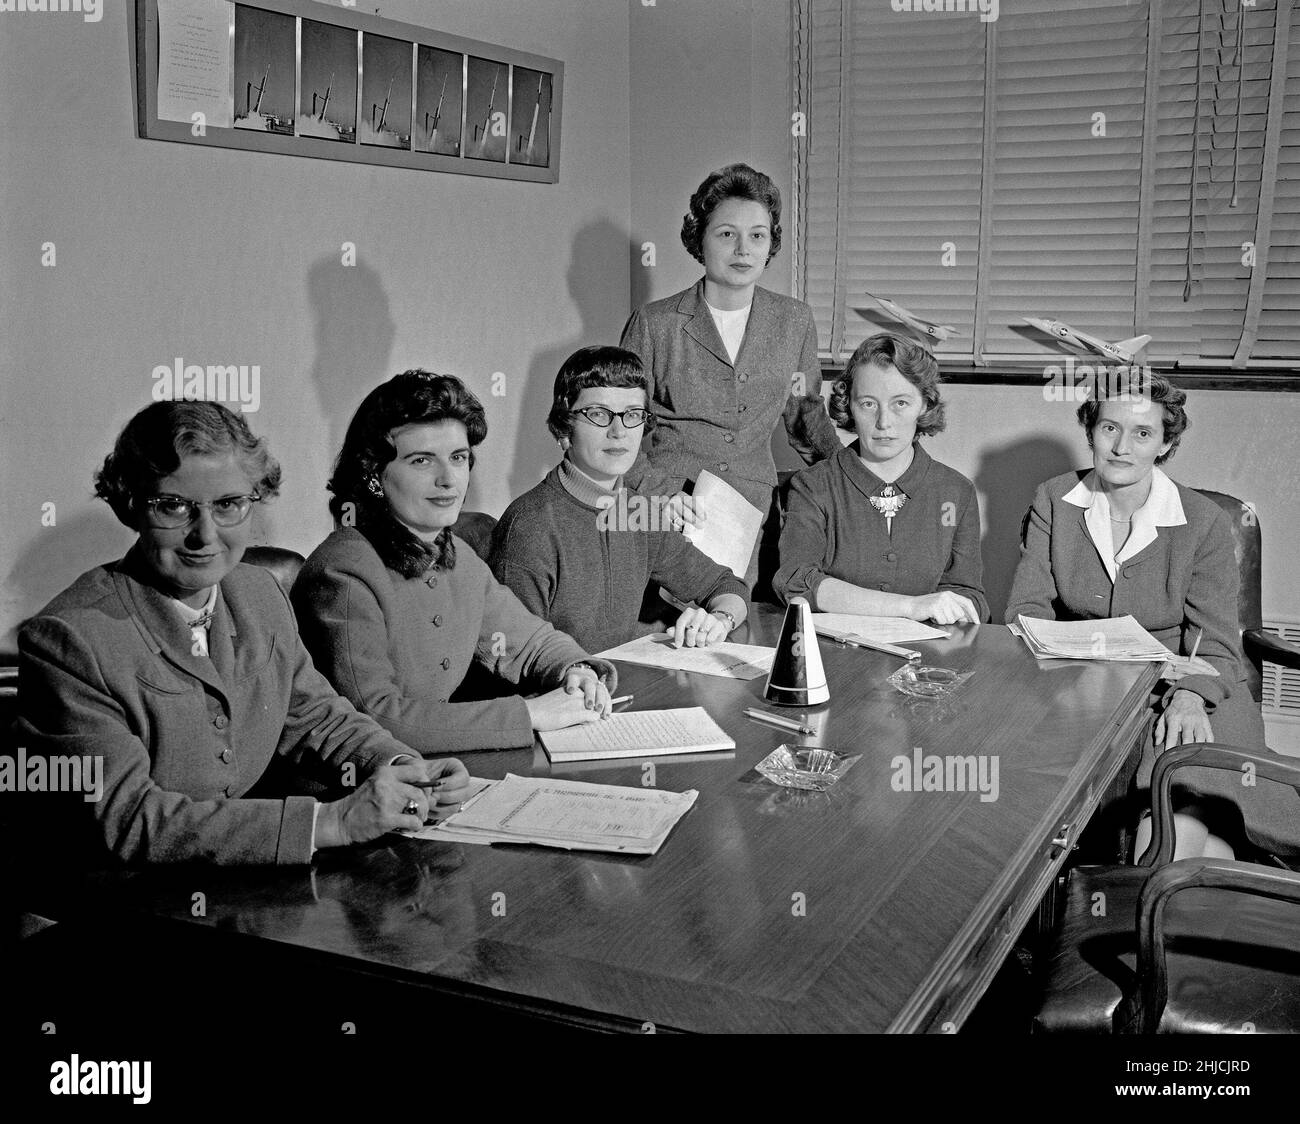 1959 versammelten sich Wissenschaftlerinnen in einem Besprechungsraum der NASA. Ganz links befindet sich Lucille Coltrane. Lucille war ein „Computer“ am Langley Research Center. Neben Lucille ist Jean Clark Keating, ein Luft- und Raumfahrtingenieur. Die dritte Frau von links ist Katherine Collie Speegle, eine Mathematikerin. Die Frau, die steht, ist Doris 'Dot' Lee, die in einem Team mit Katherine Collie Speegle gearbeitet hat. Neben Doris ist Ruth I. Whitman, Ingenieurin der Abteilung pilotlose Flugzeuge. Die Frau, die rechts von Ruth sitzt, ist Emily Stephens Mueller, eine Computer, die mit der Space Task Group zusammengearbeitet hat. Stockfoto